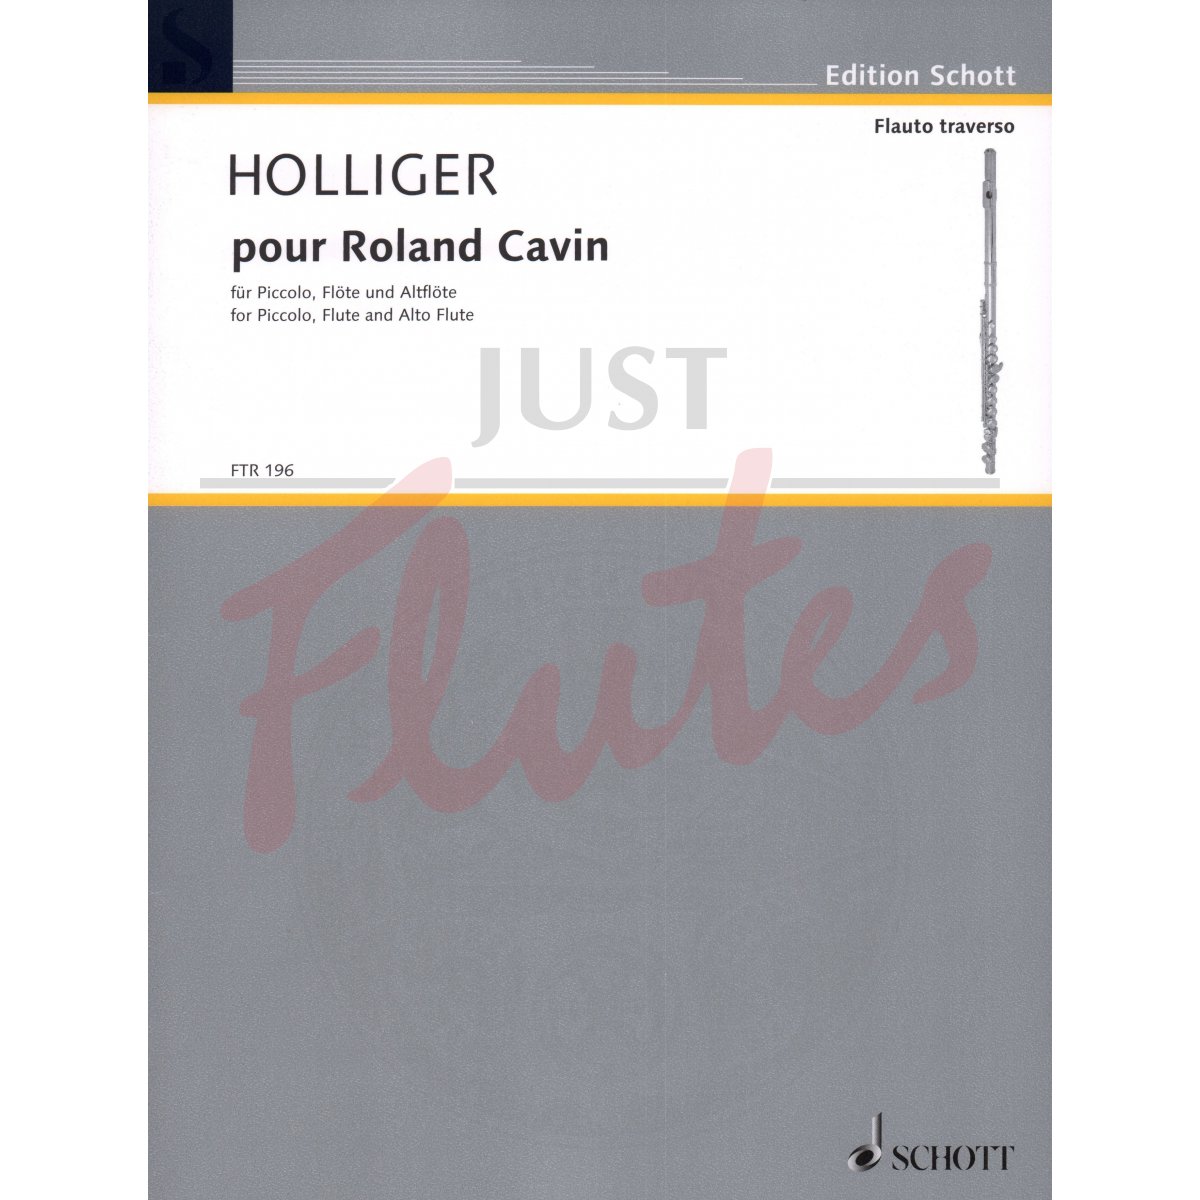 Pour Roland Cavin for Piccolo, Flute, and Alto Flute